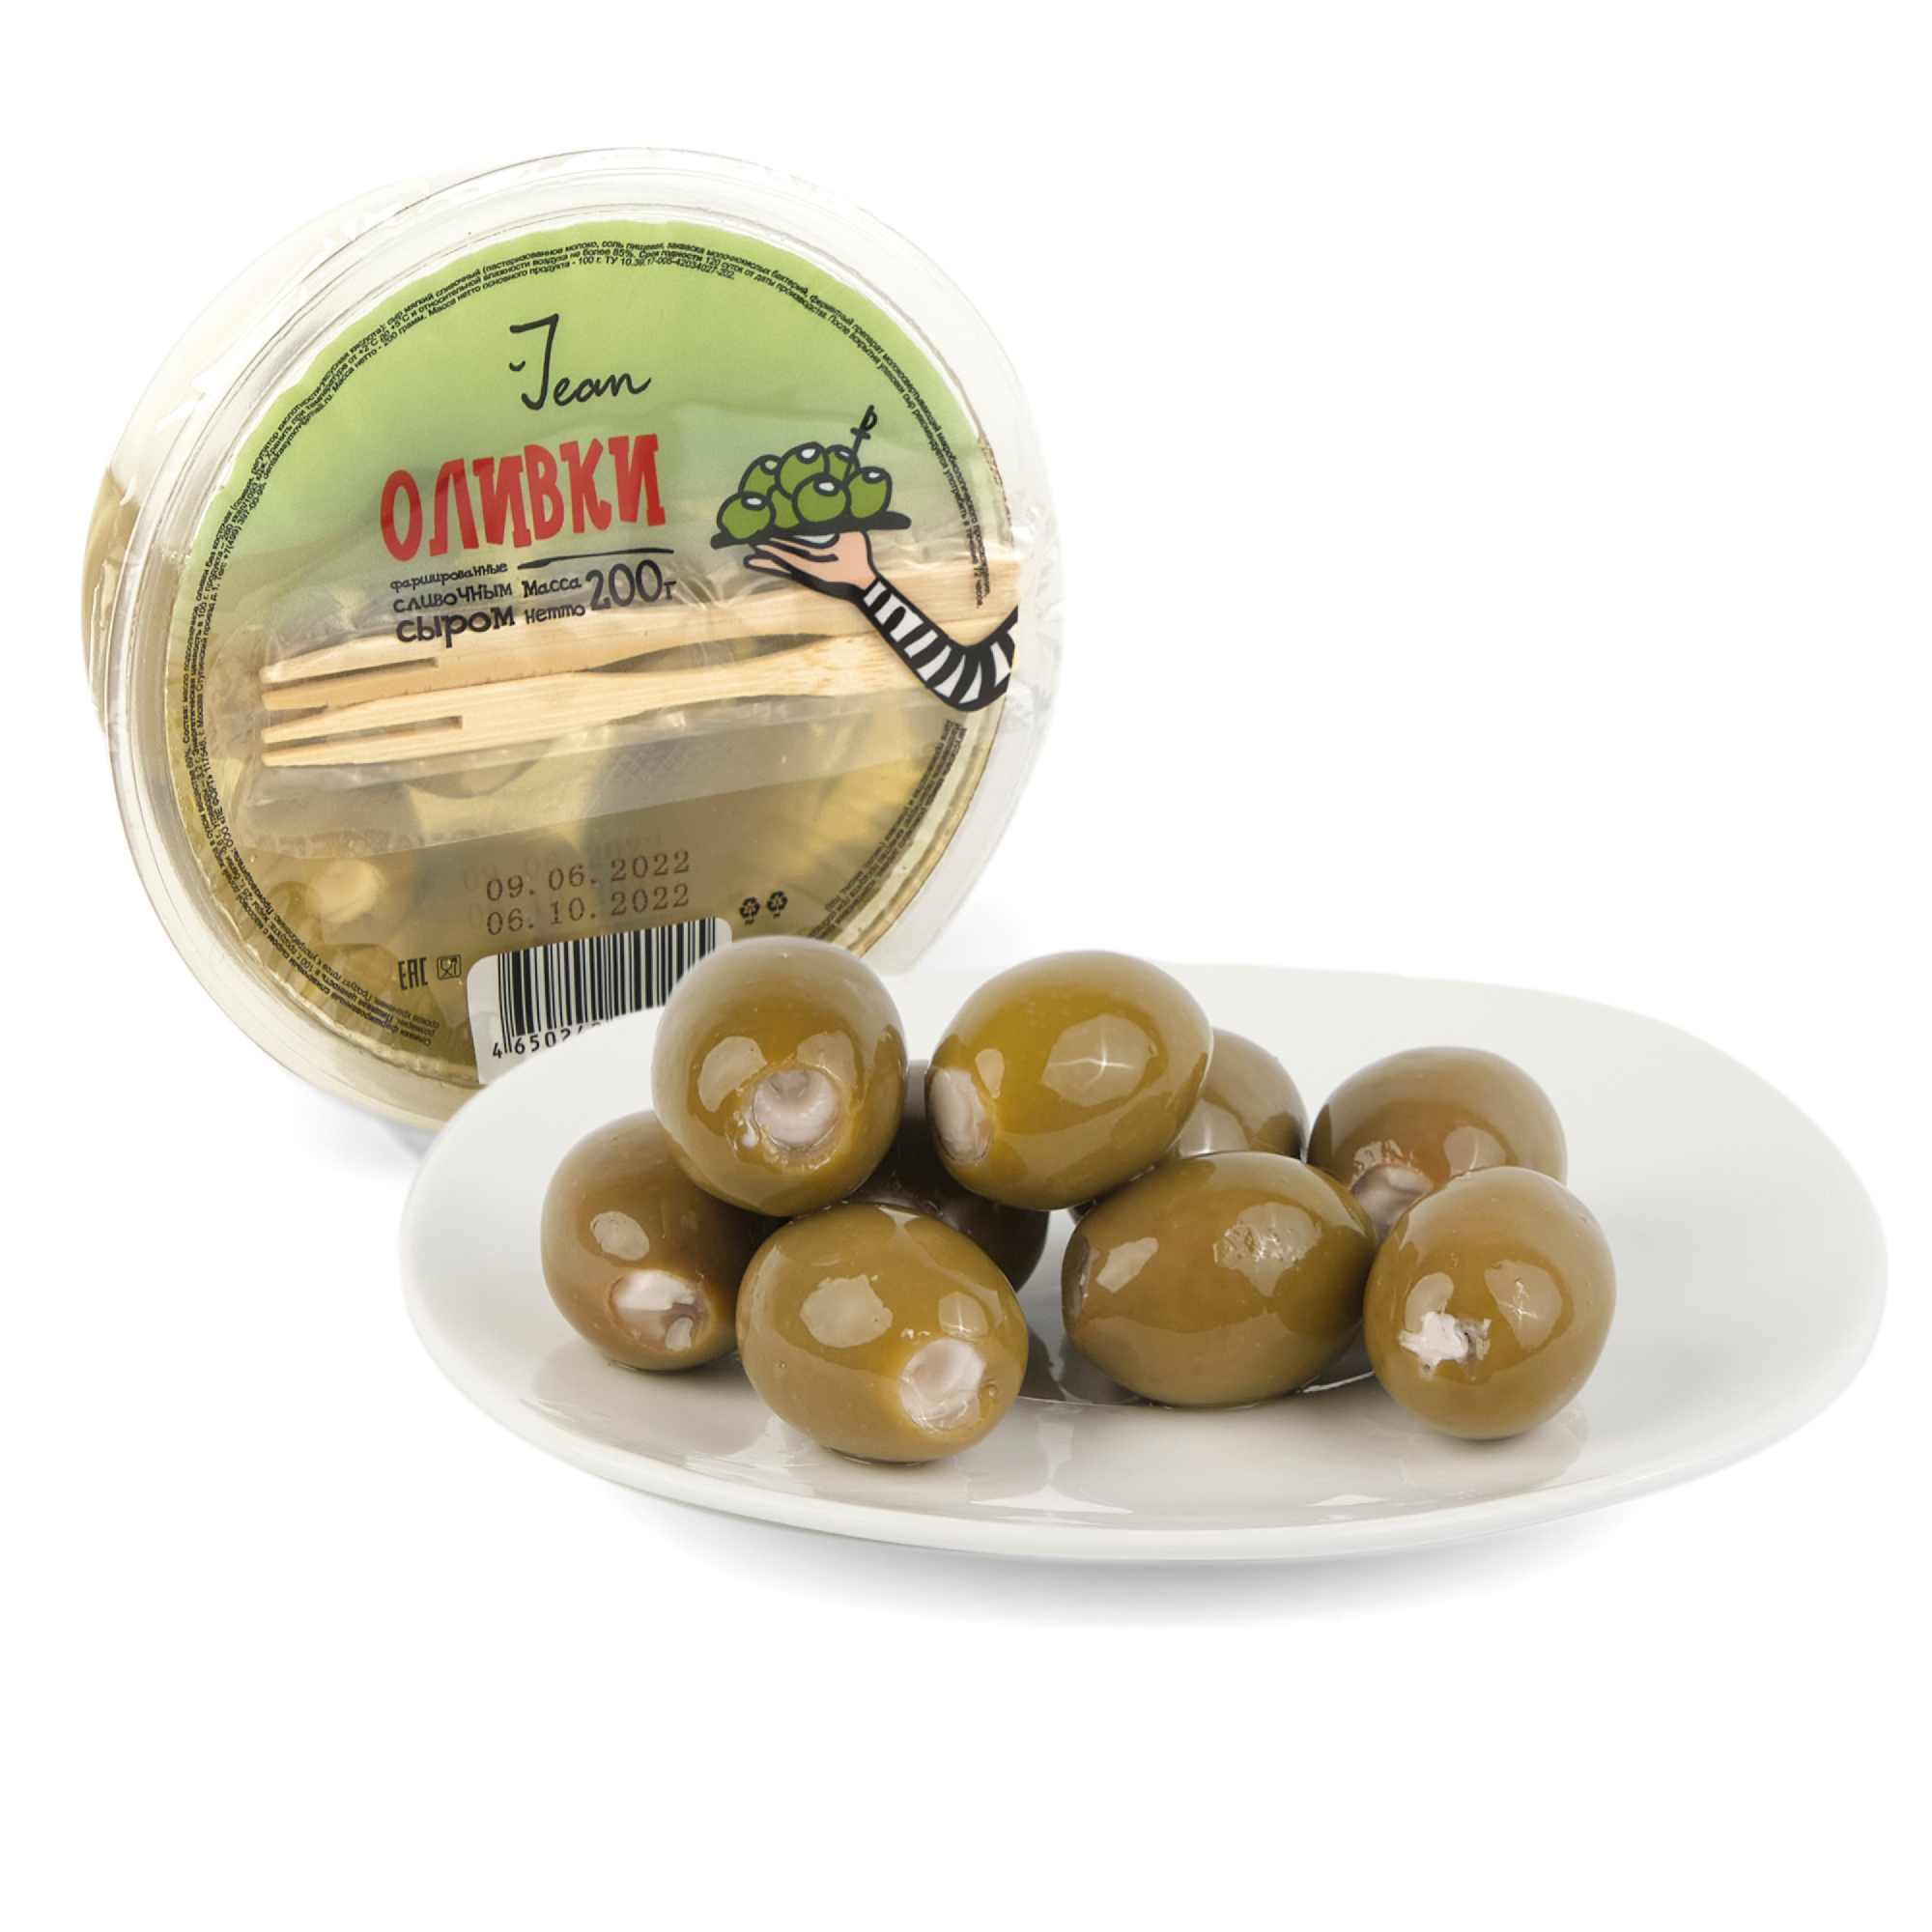 Фаршированные оливки Jean сливочным сыром, 200 г оливки глобус фаршированные лососем 300 г